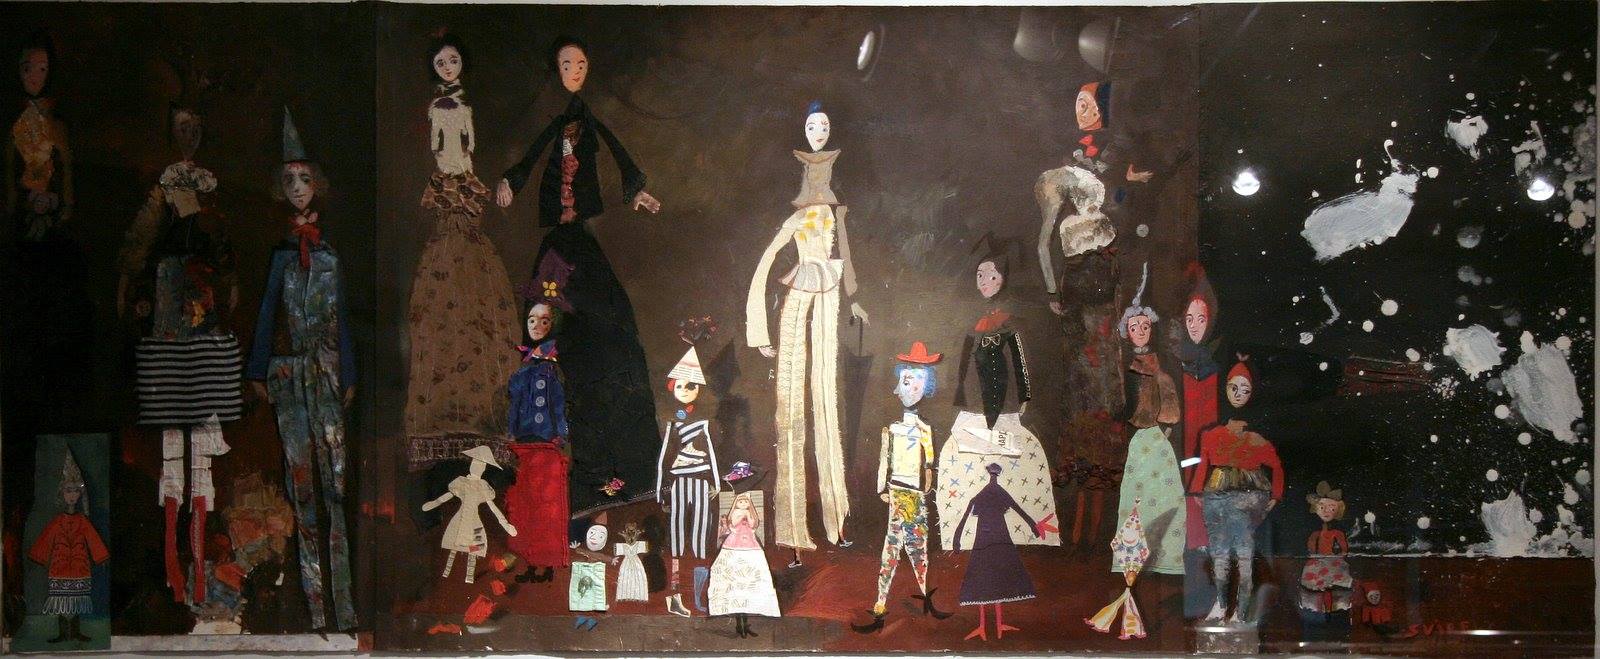 Театр. Темо Свірелі, грузинський та український художник (народився в 1965 році в Грузії - помер в 2014 році в Україні), текстиль, акріл, пастель на папері (колаж), 2007